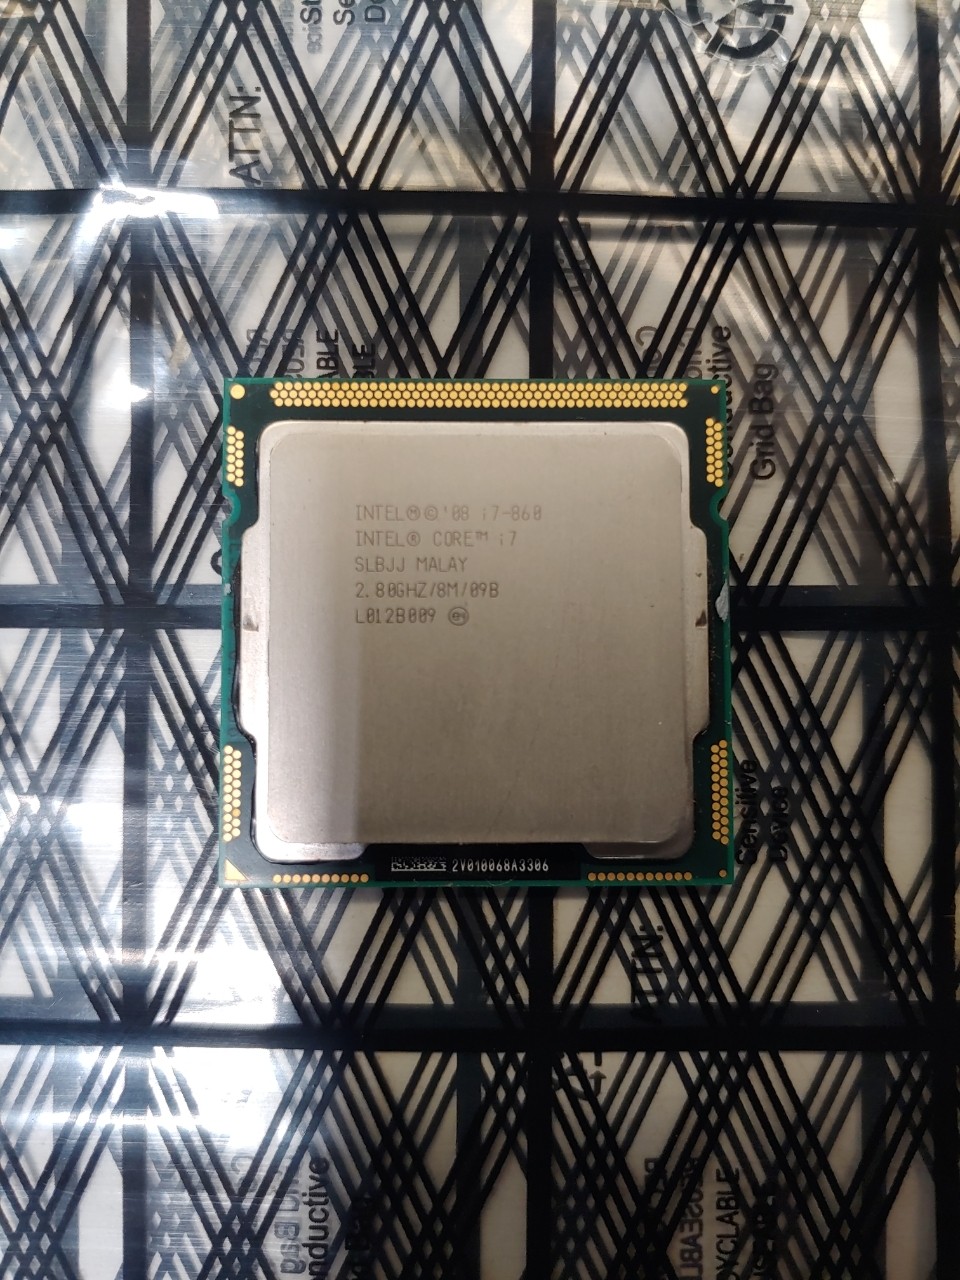 Intel Core i7-860 2.80GHz Quad-Core CPU Computer Processor LGA1156 Socket SLBJJ